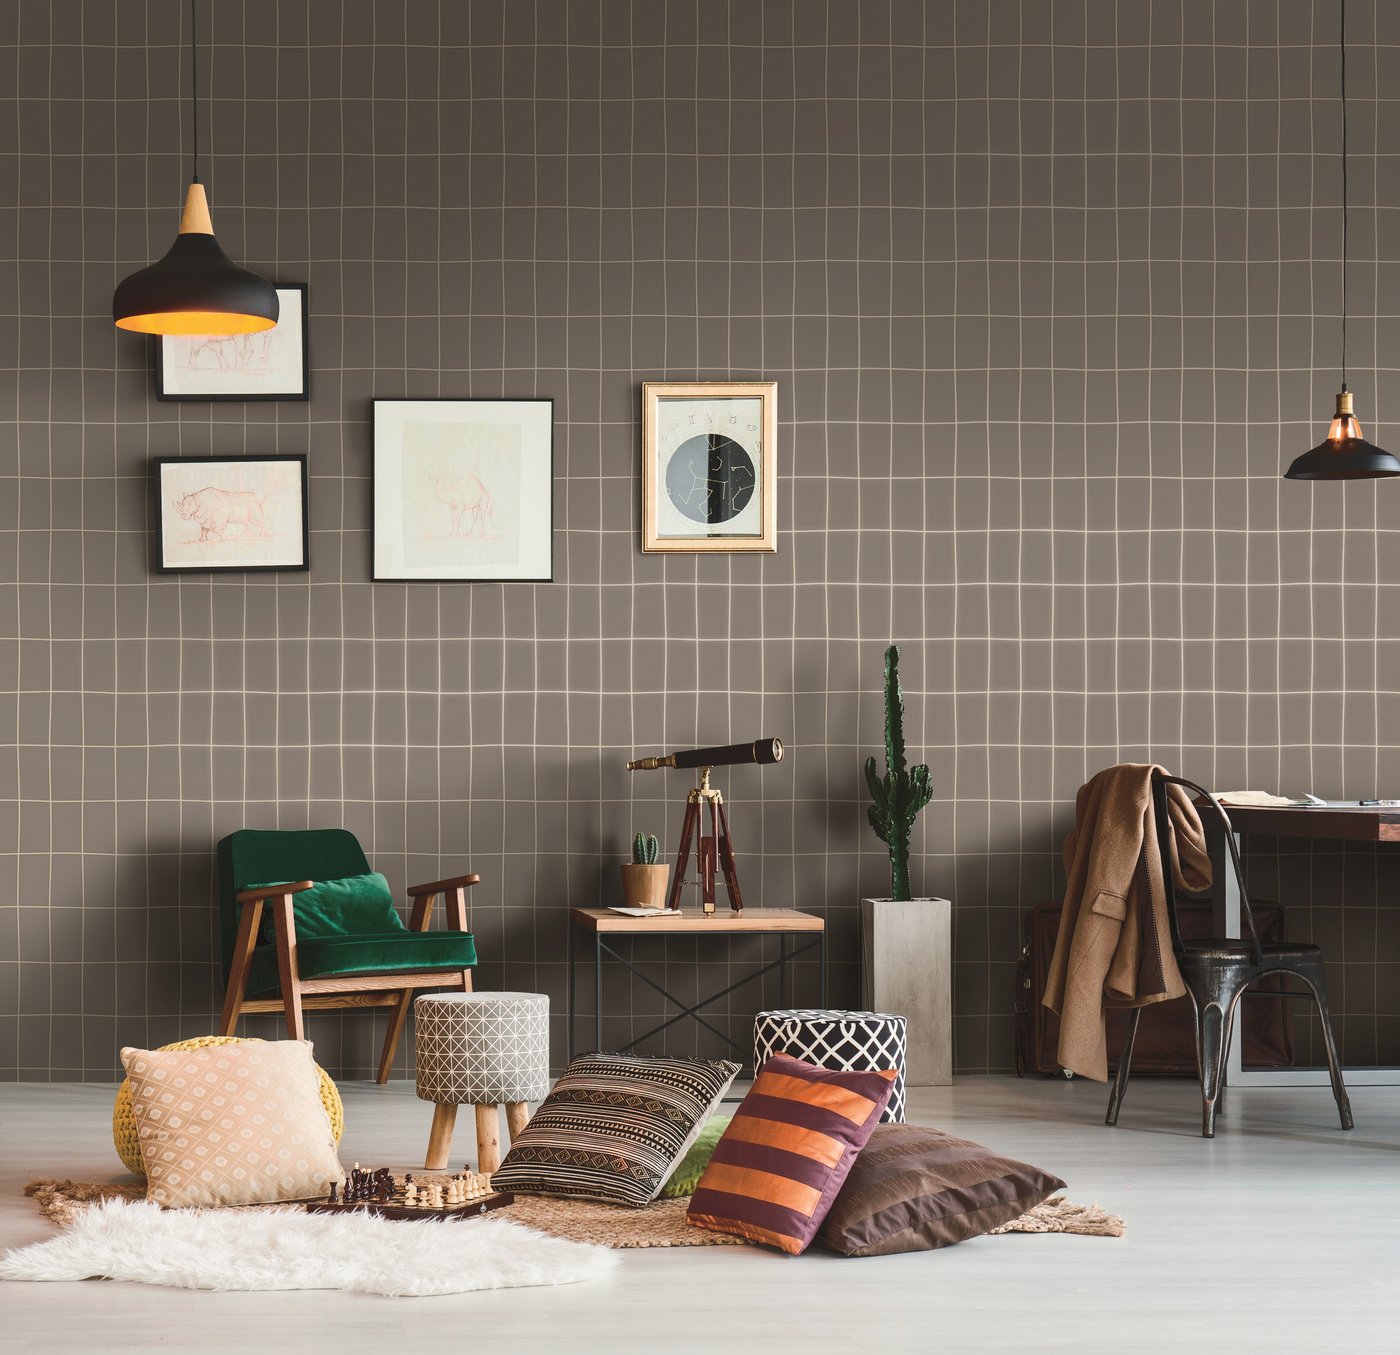 壁紙dinding,壁,ルーム,家具,インテリア・デザイン,褐色